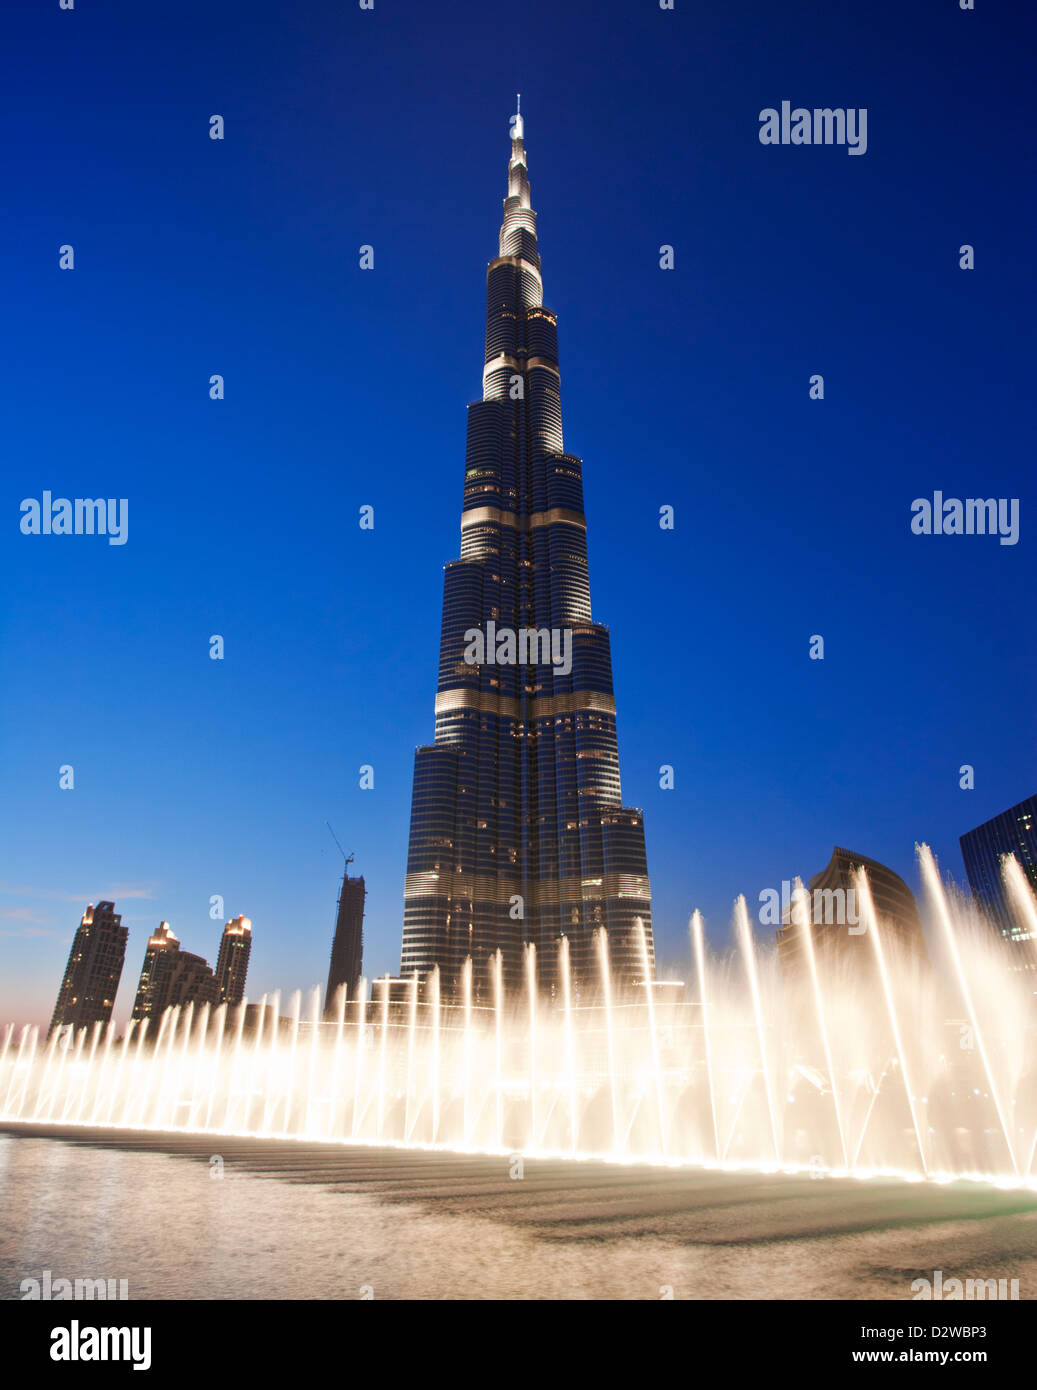 Spectacle de fontaine en face de la tour Burj Khalifa, avec ses 828 mètres de hauteur c'est le plus haut bâtiment au monde, DUBAÏ, ÉMIRATS ARABES UNIS. Banque D'Images